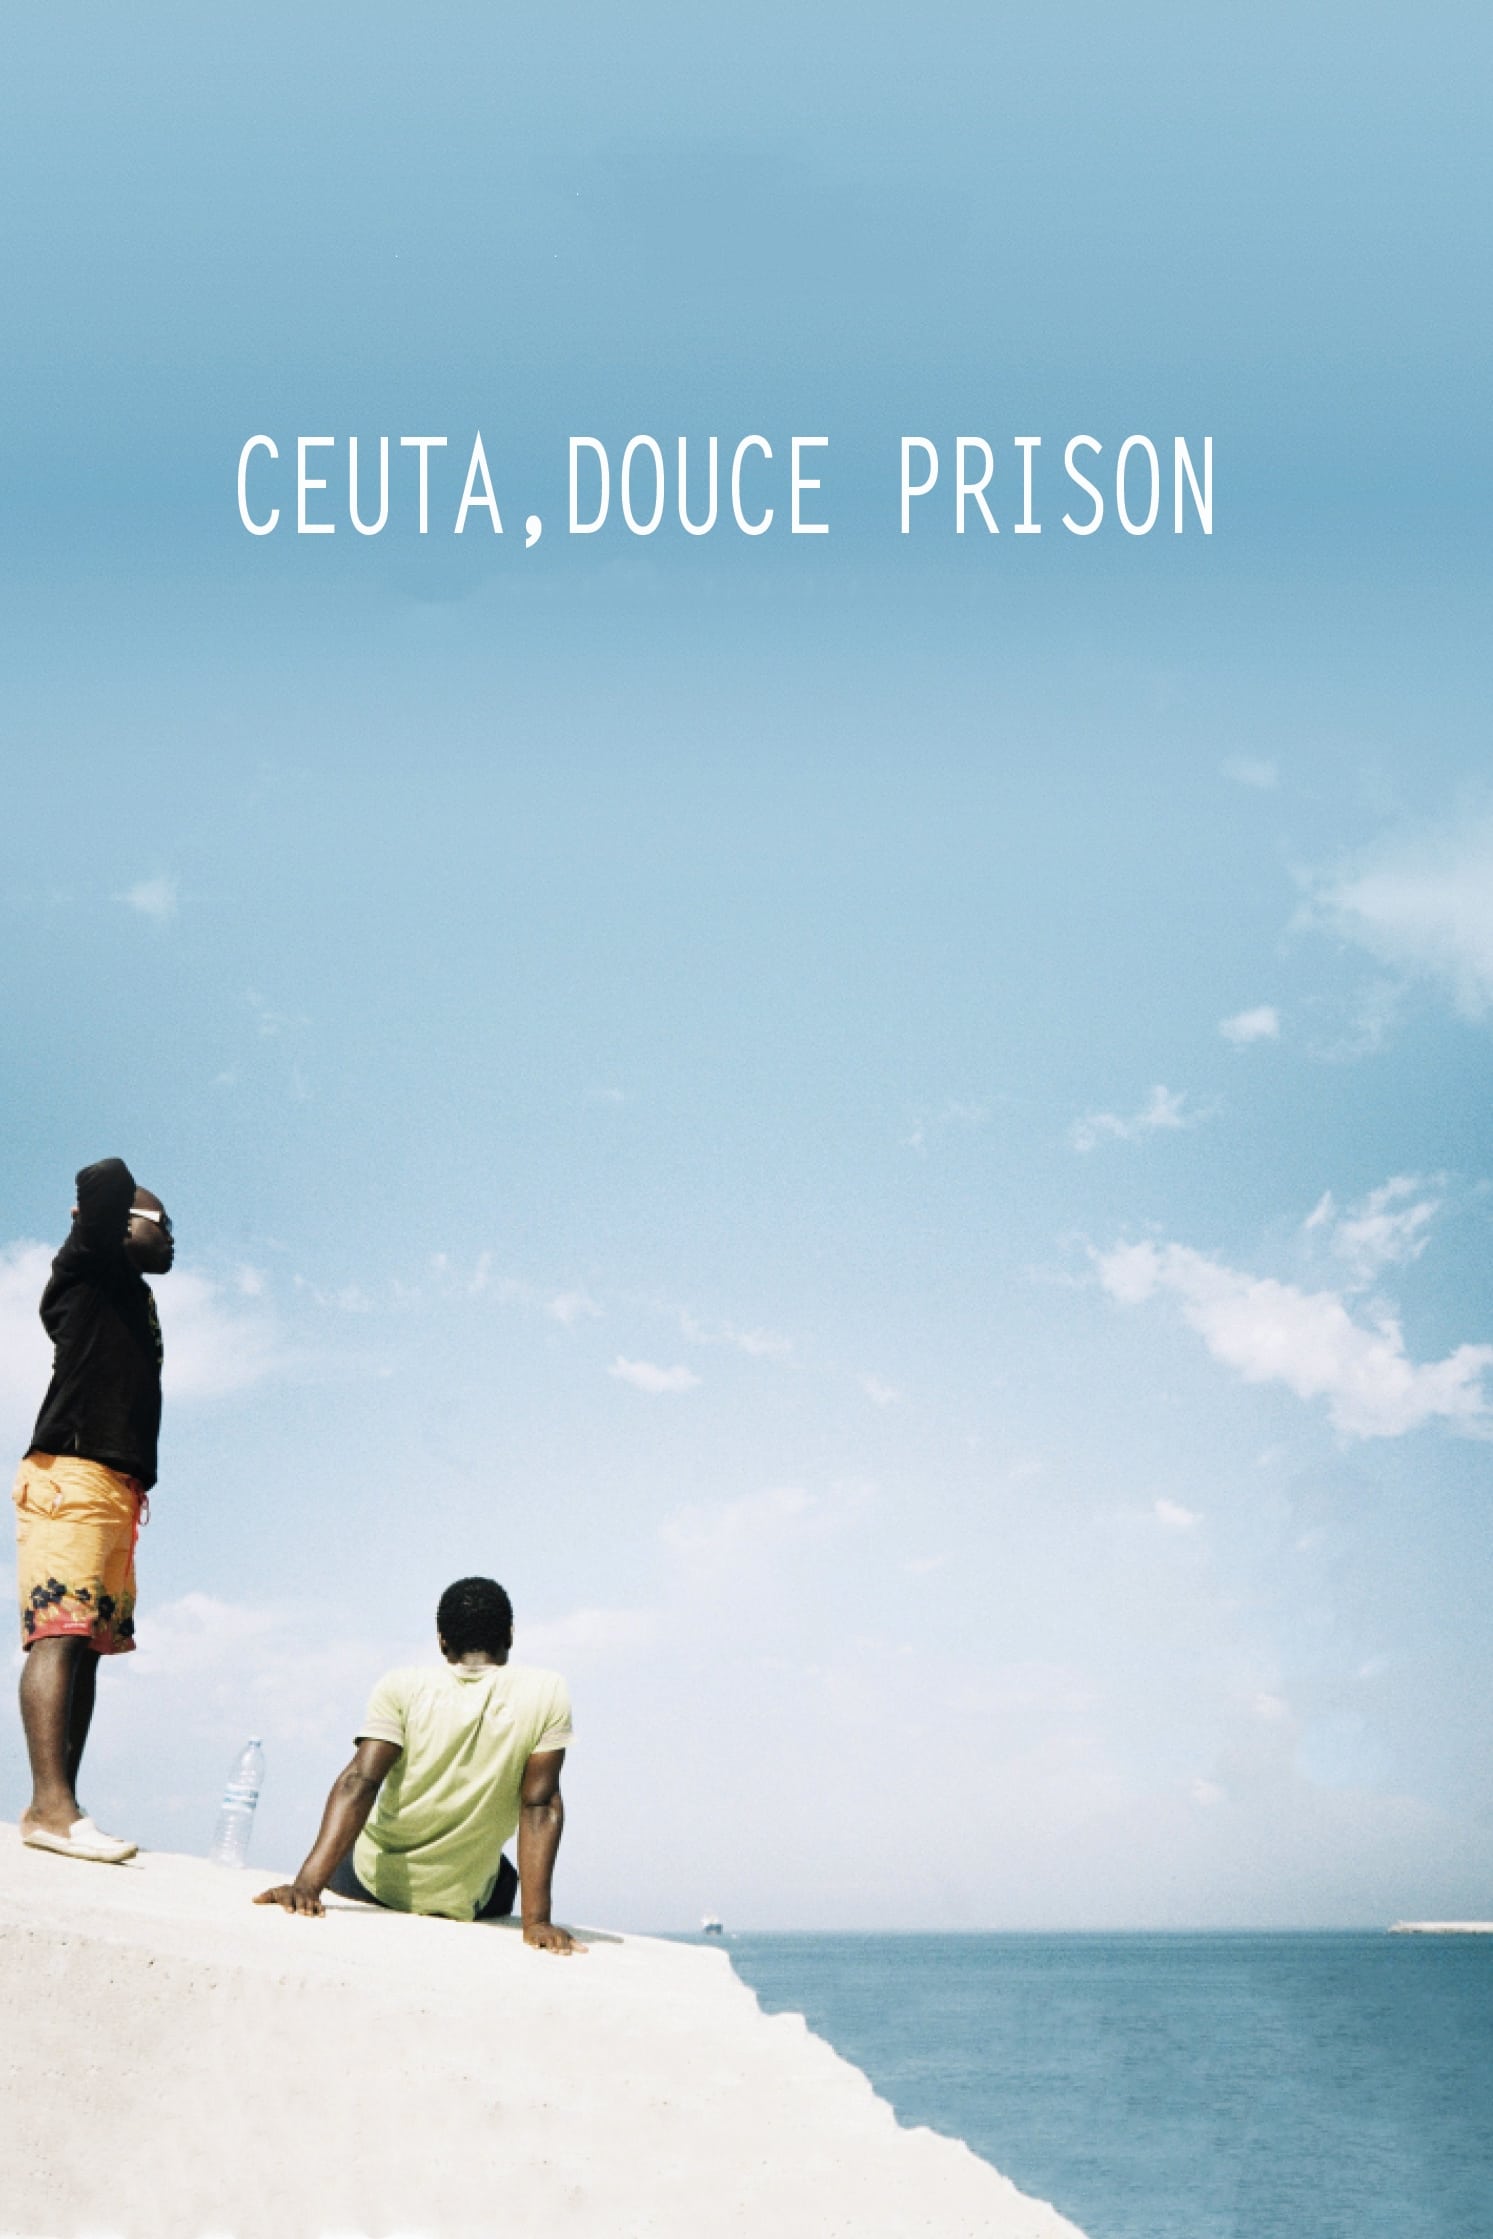 Ceuta, Prison by the Sea